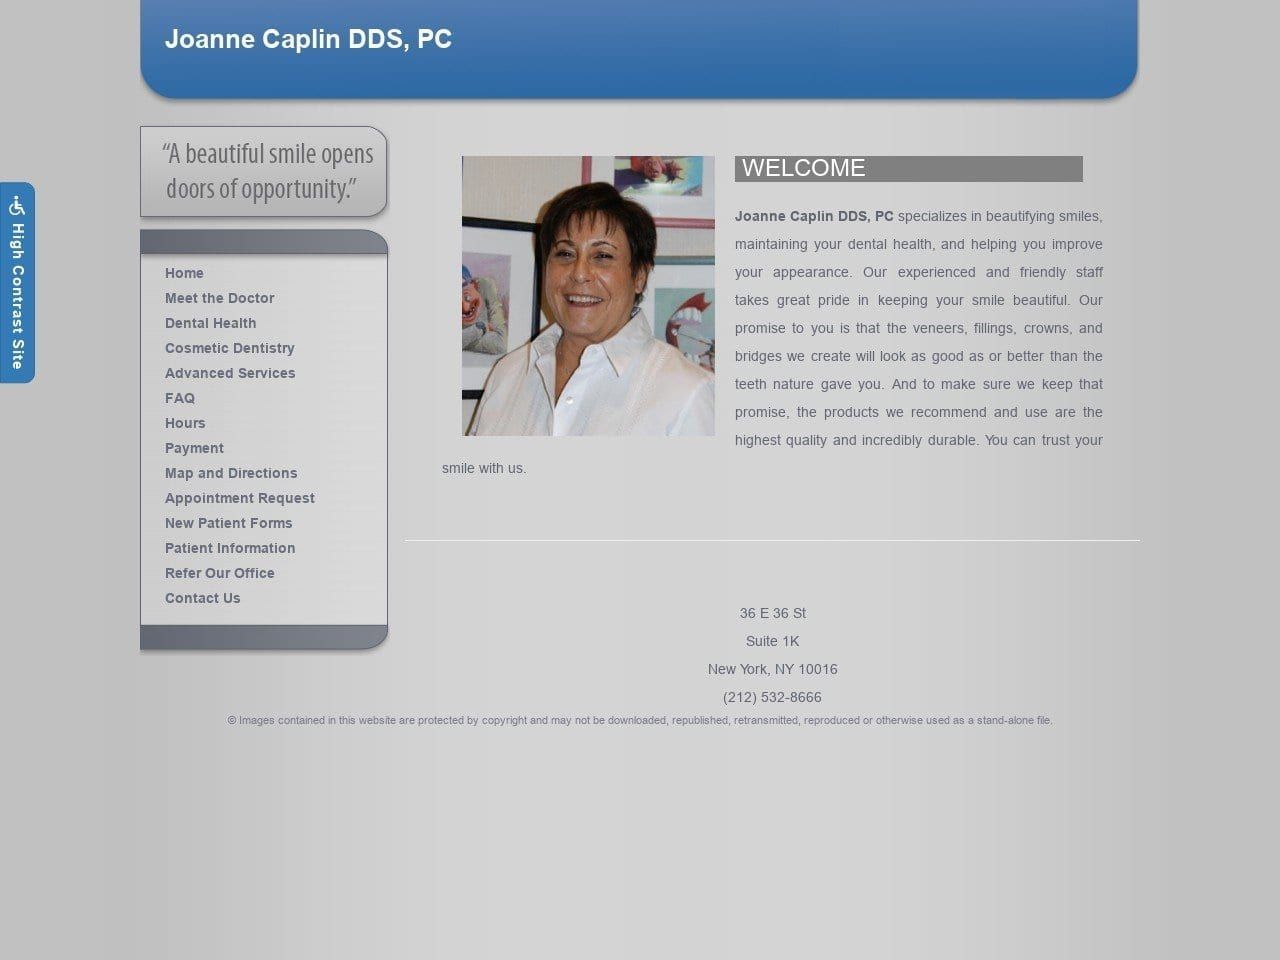 Joanne S Caplin DDS PC Website Screenshot from infodentist.com